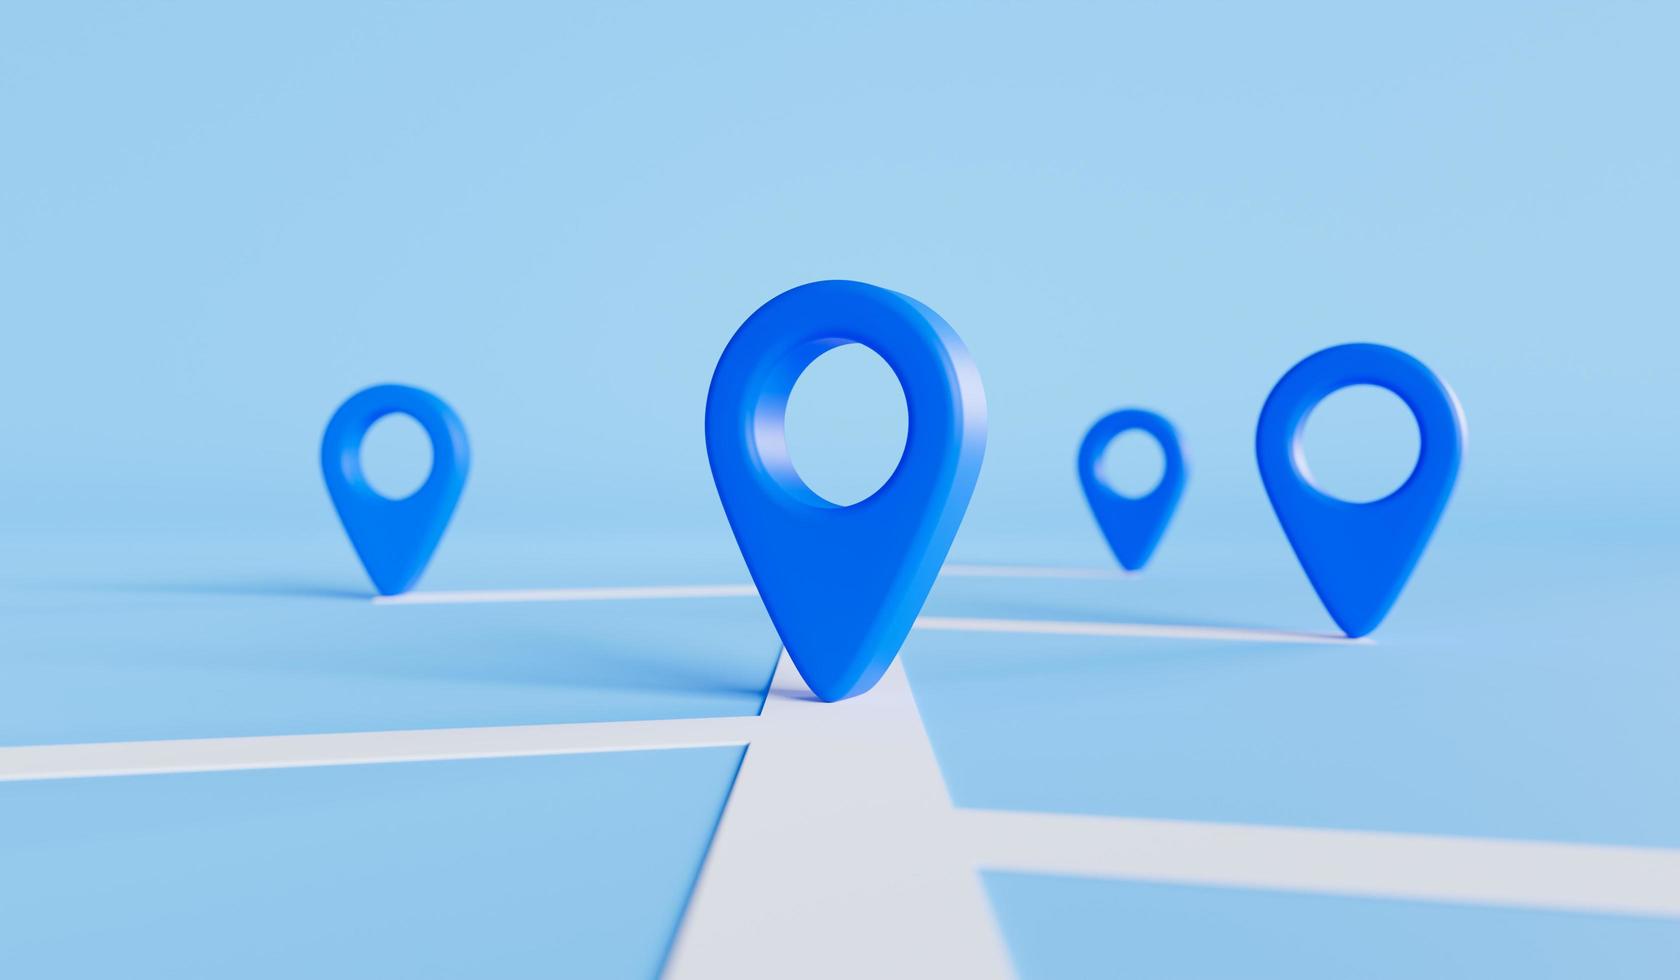 Standortmarkierung mit einem Stift auf einer Karte oder einem Navigationssymbolzeichen auf blauem Hintergrund, Transport- und Reisethemenkonzept. 3D-Rendering. foto